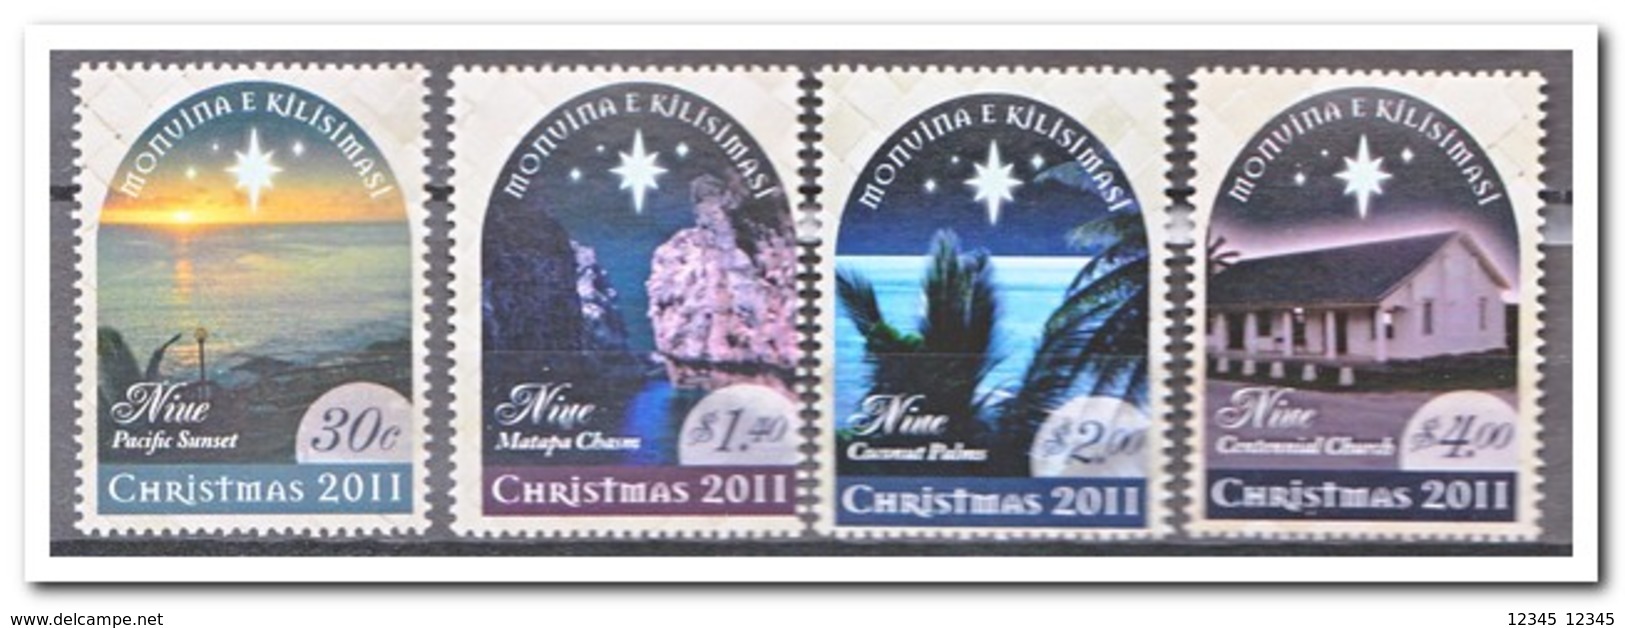 Niue 2011, Postfris MNH, Christmas - Niue